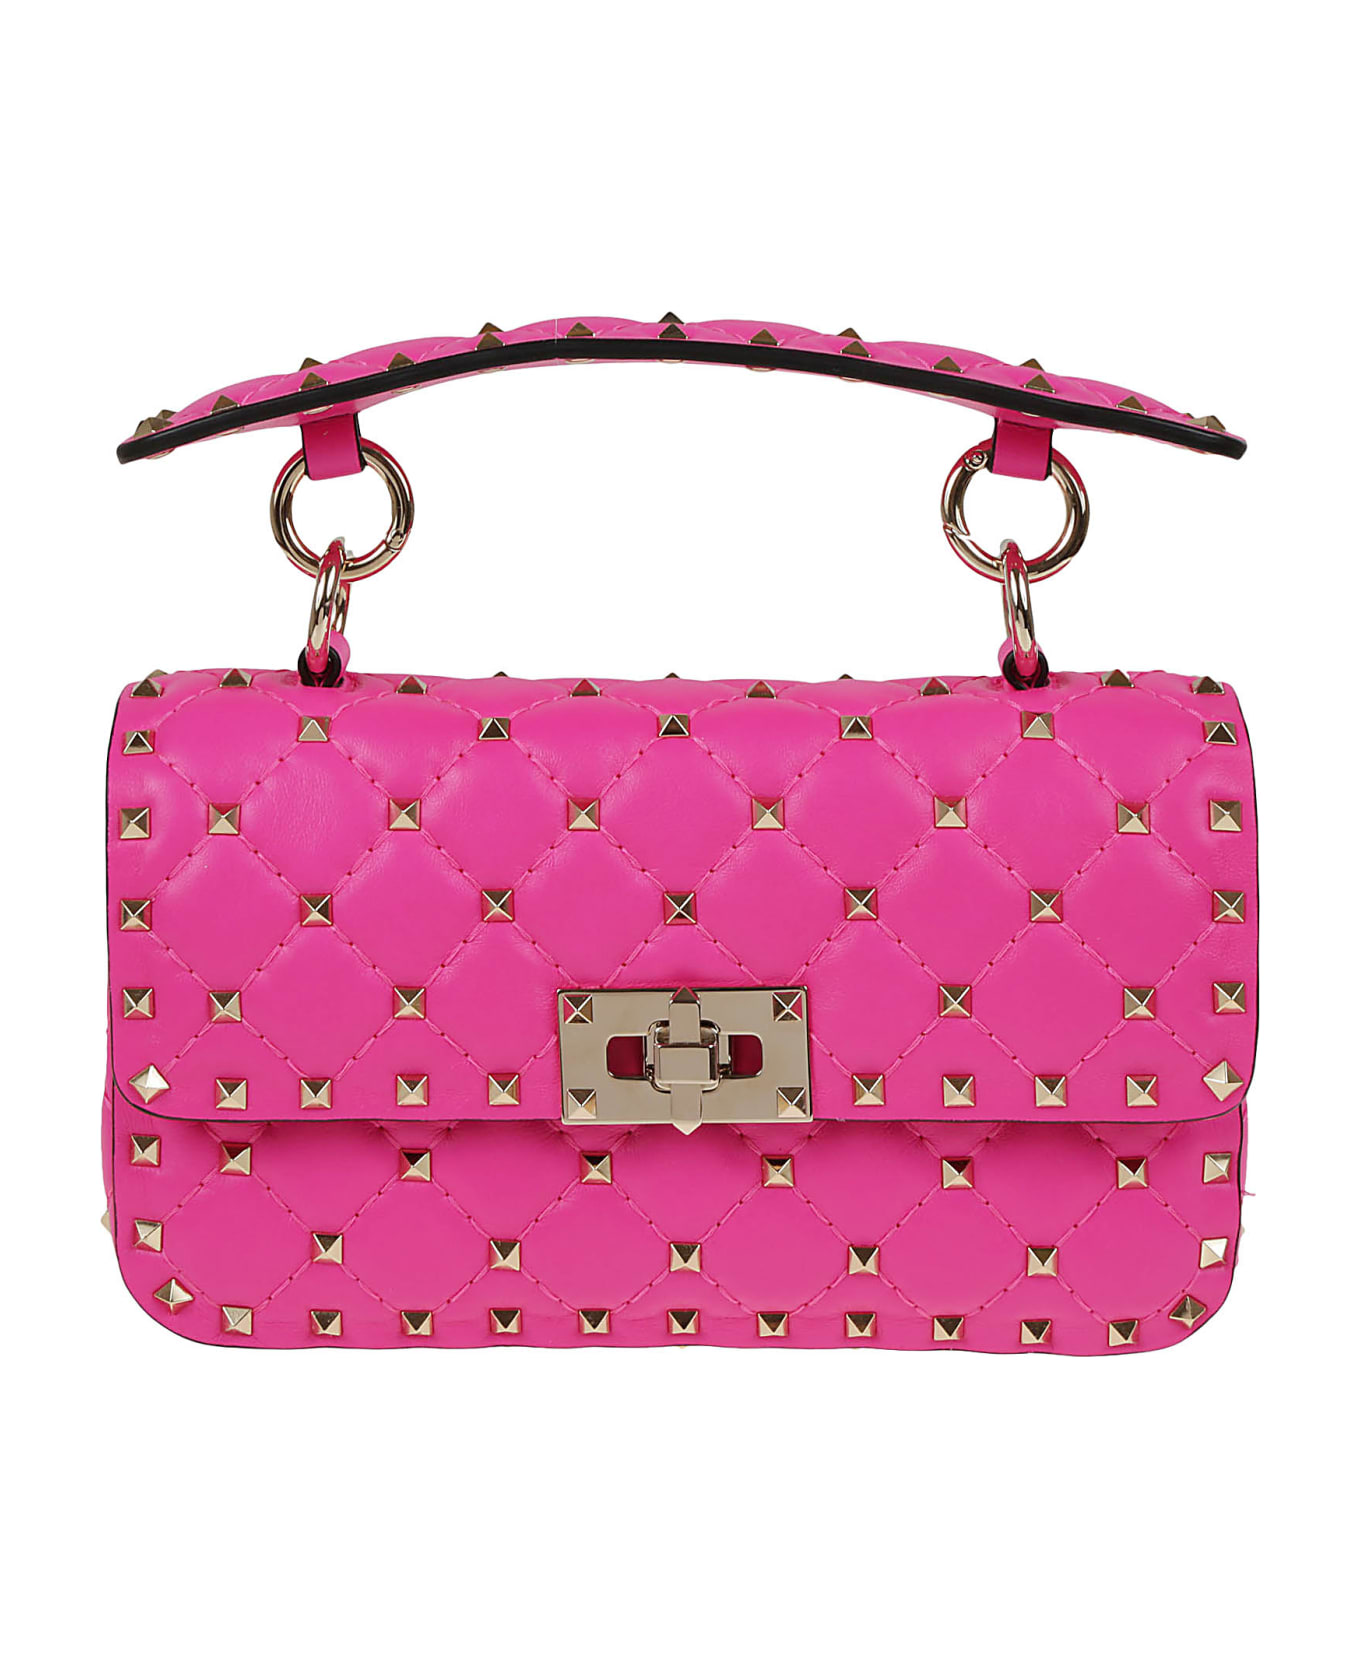 Valentino Garavani Small Shoulder Bag Rockstud Spike - Uwt Pink Pp